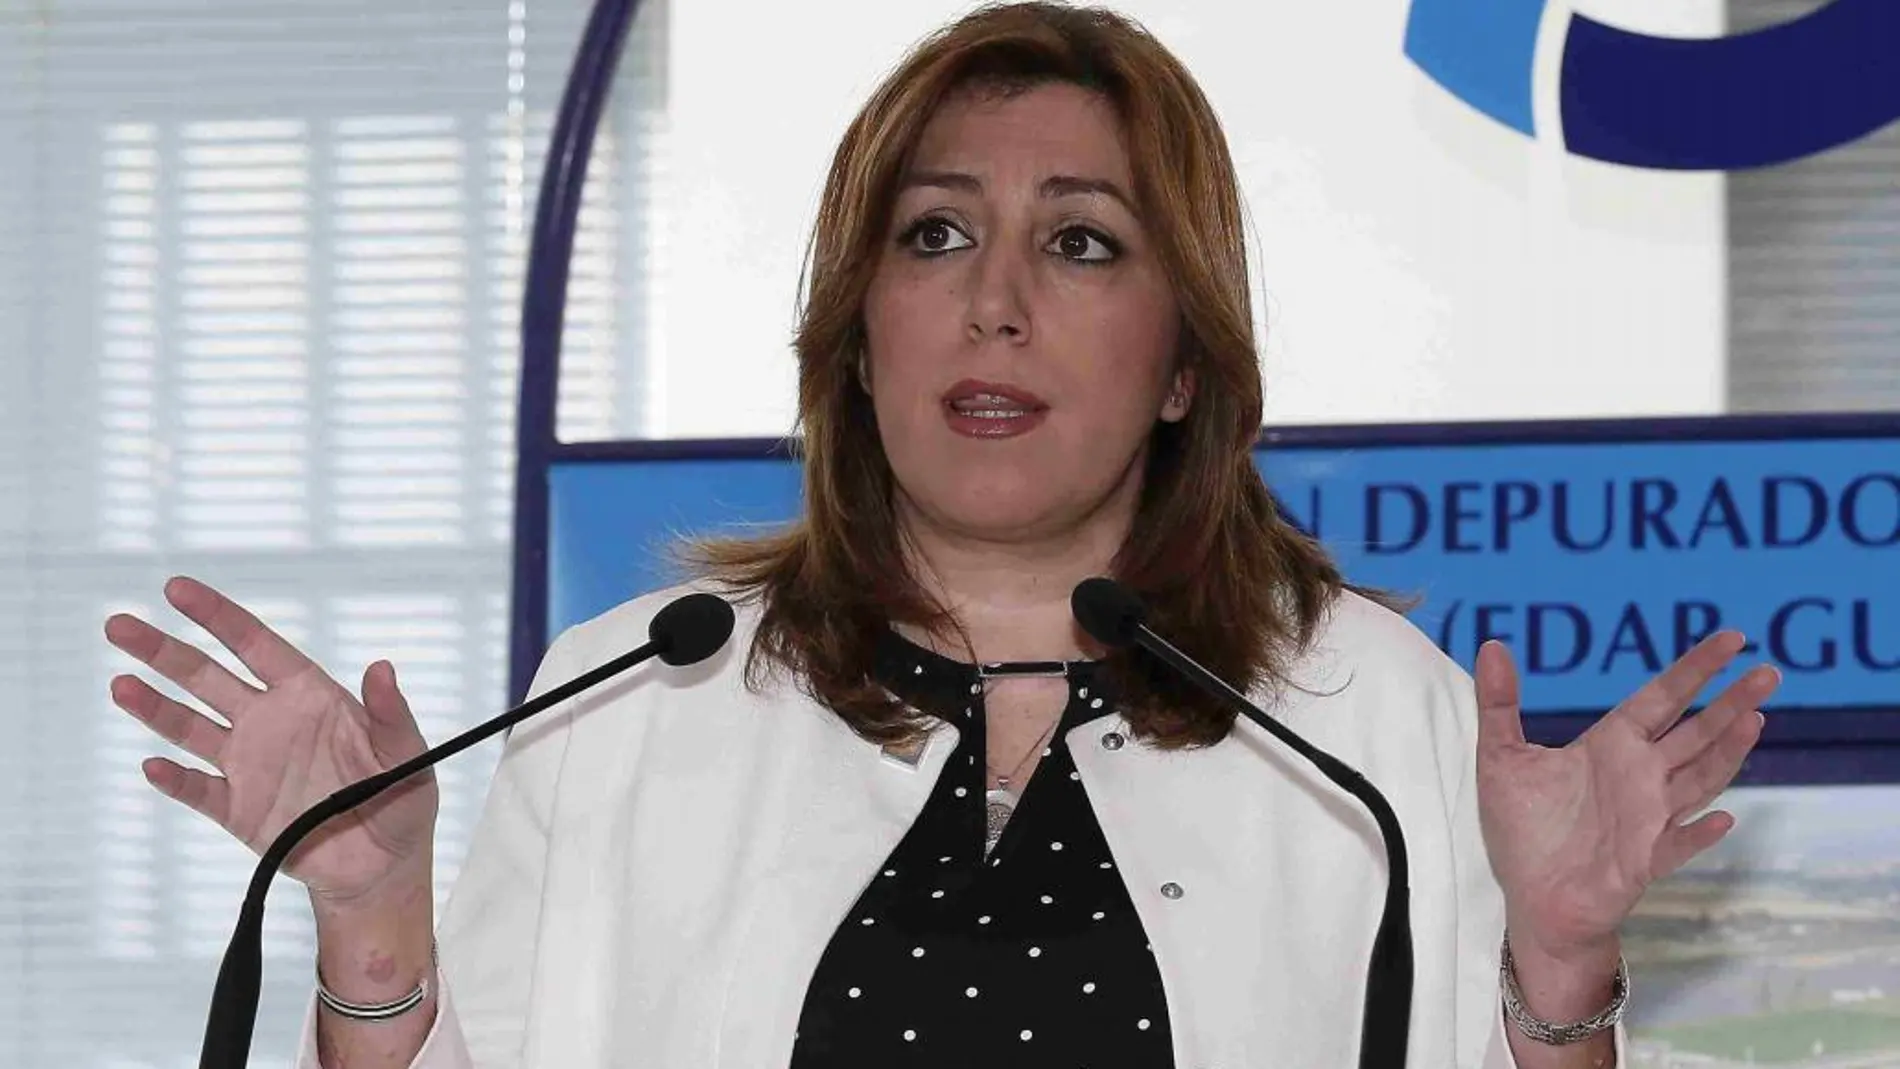 La presidenta de la Junta, Susana Díaz, durante la inauguración hoy en Palomares del Río (Sevilla) de una estación depuradora.